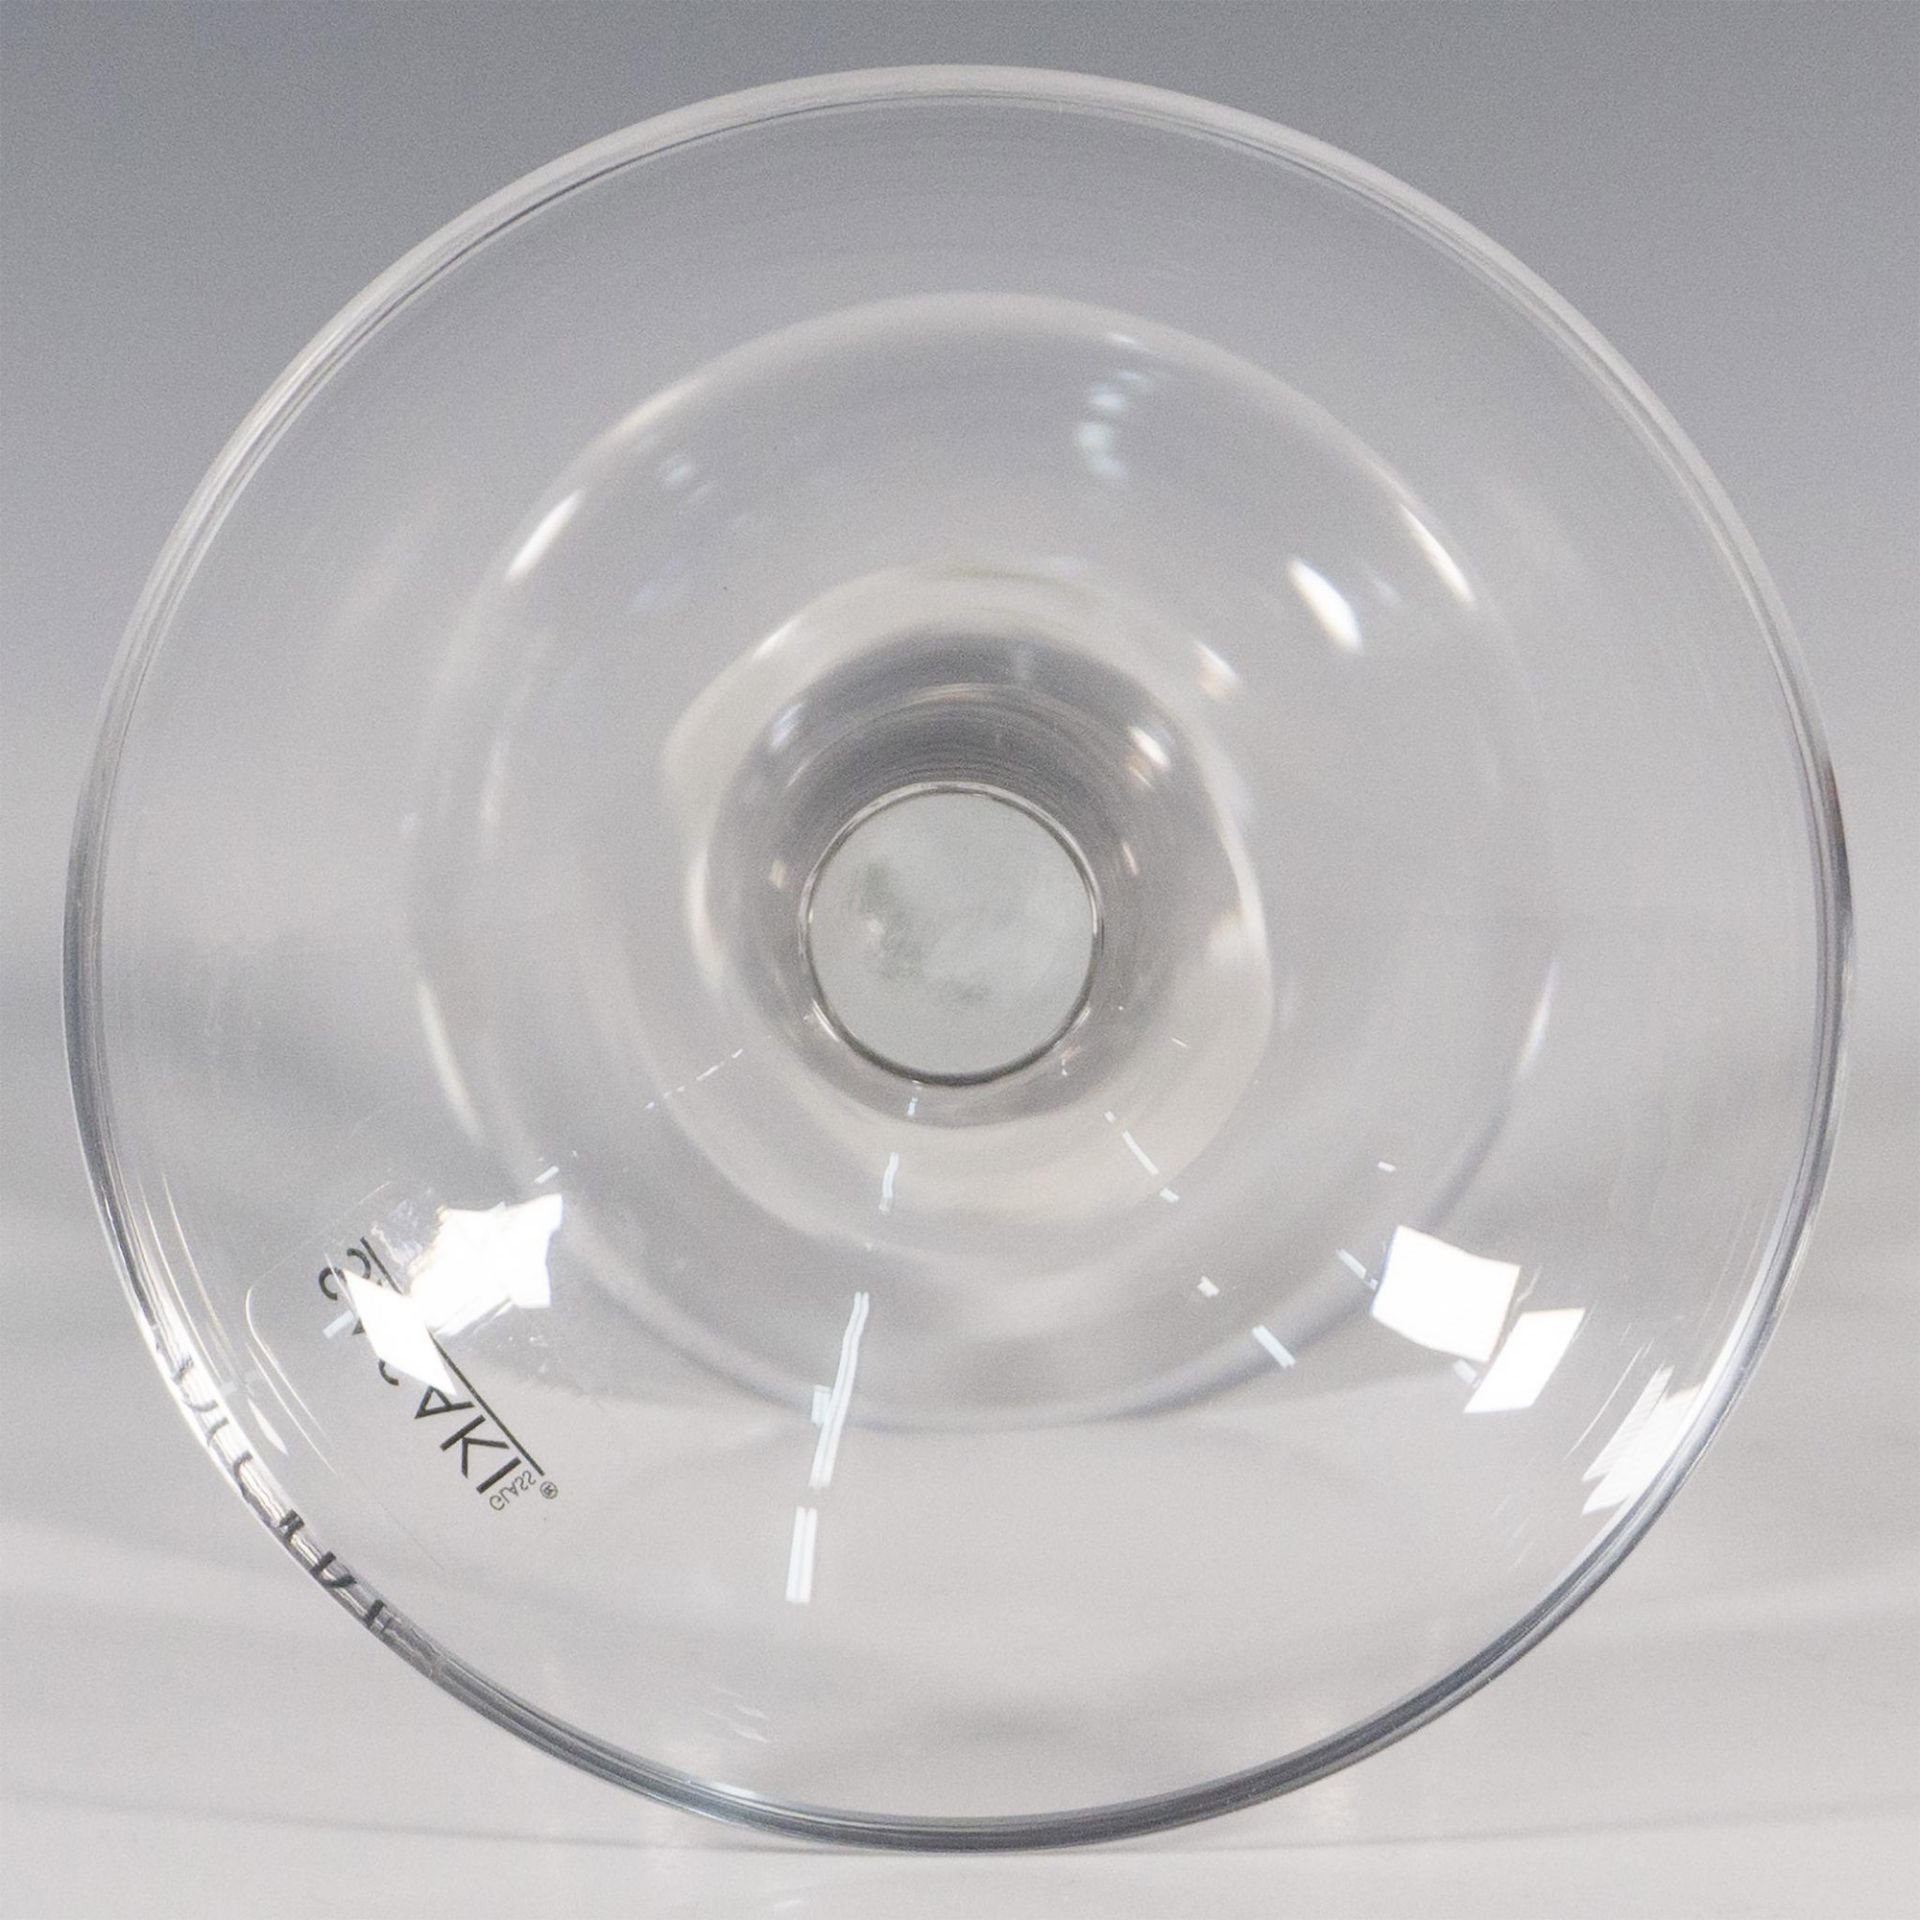 Sasaki Glass Candle Holder, Echo - Image 3 of 4